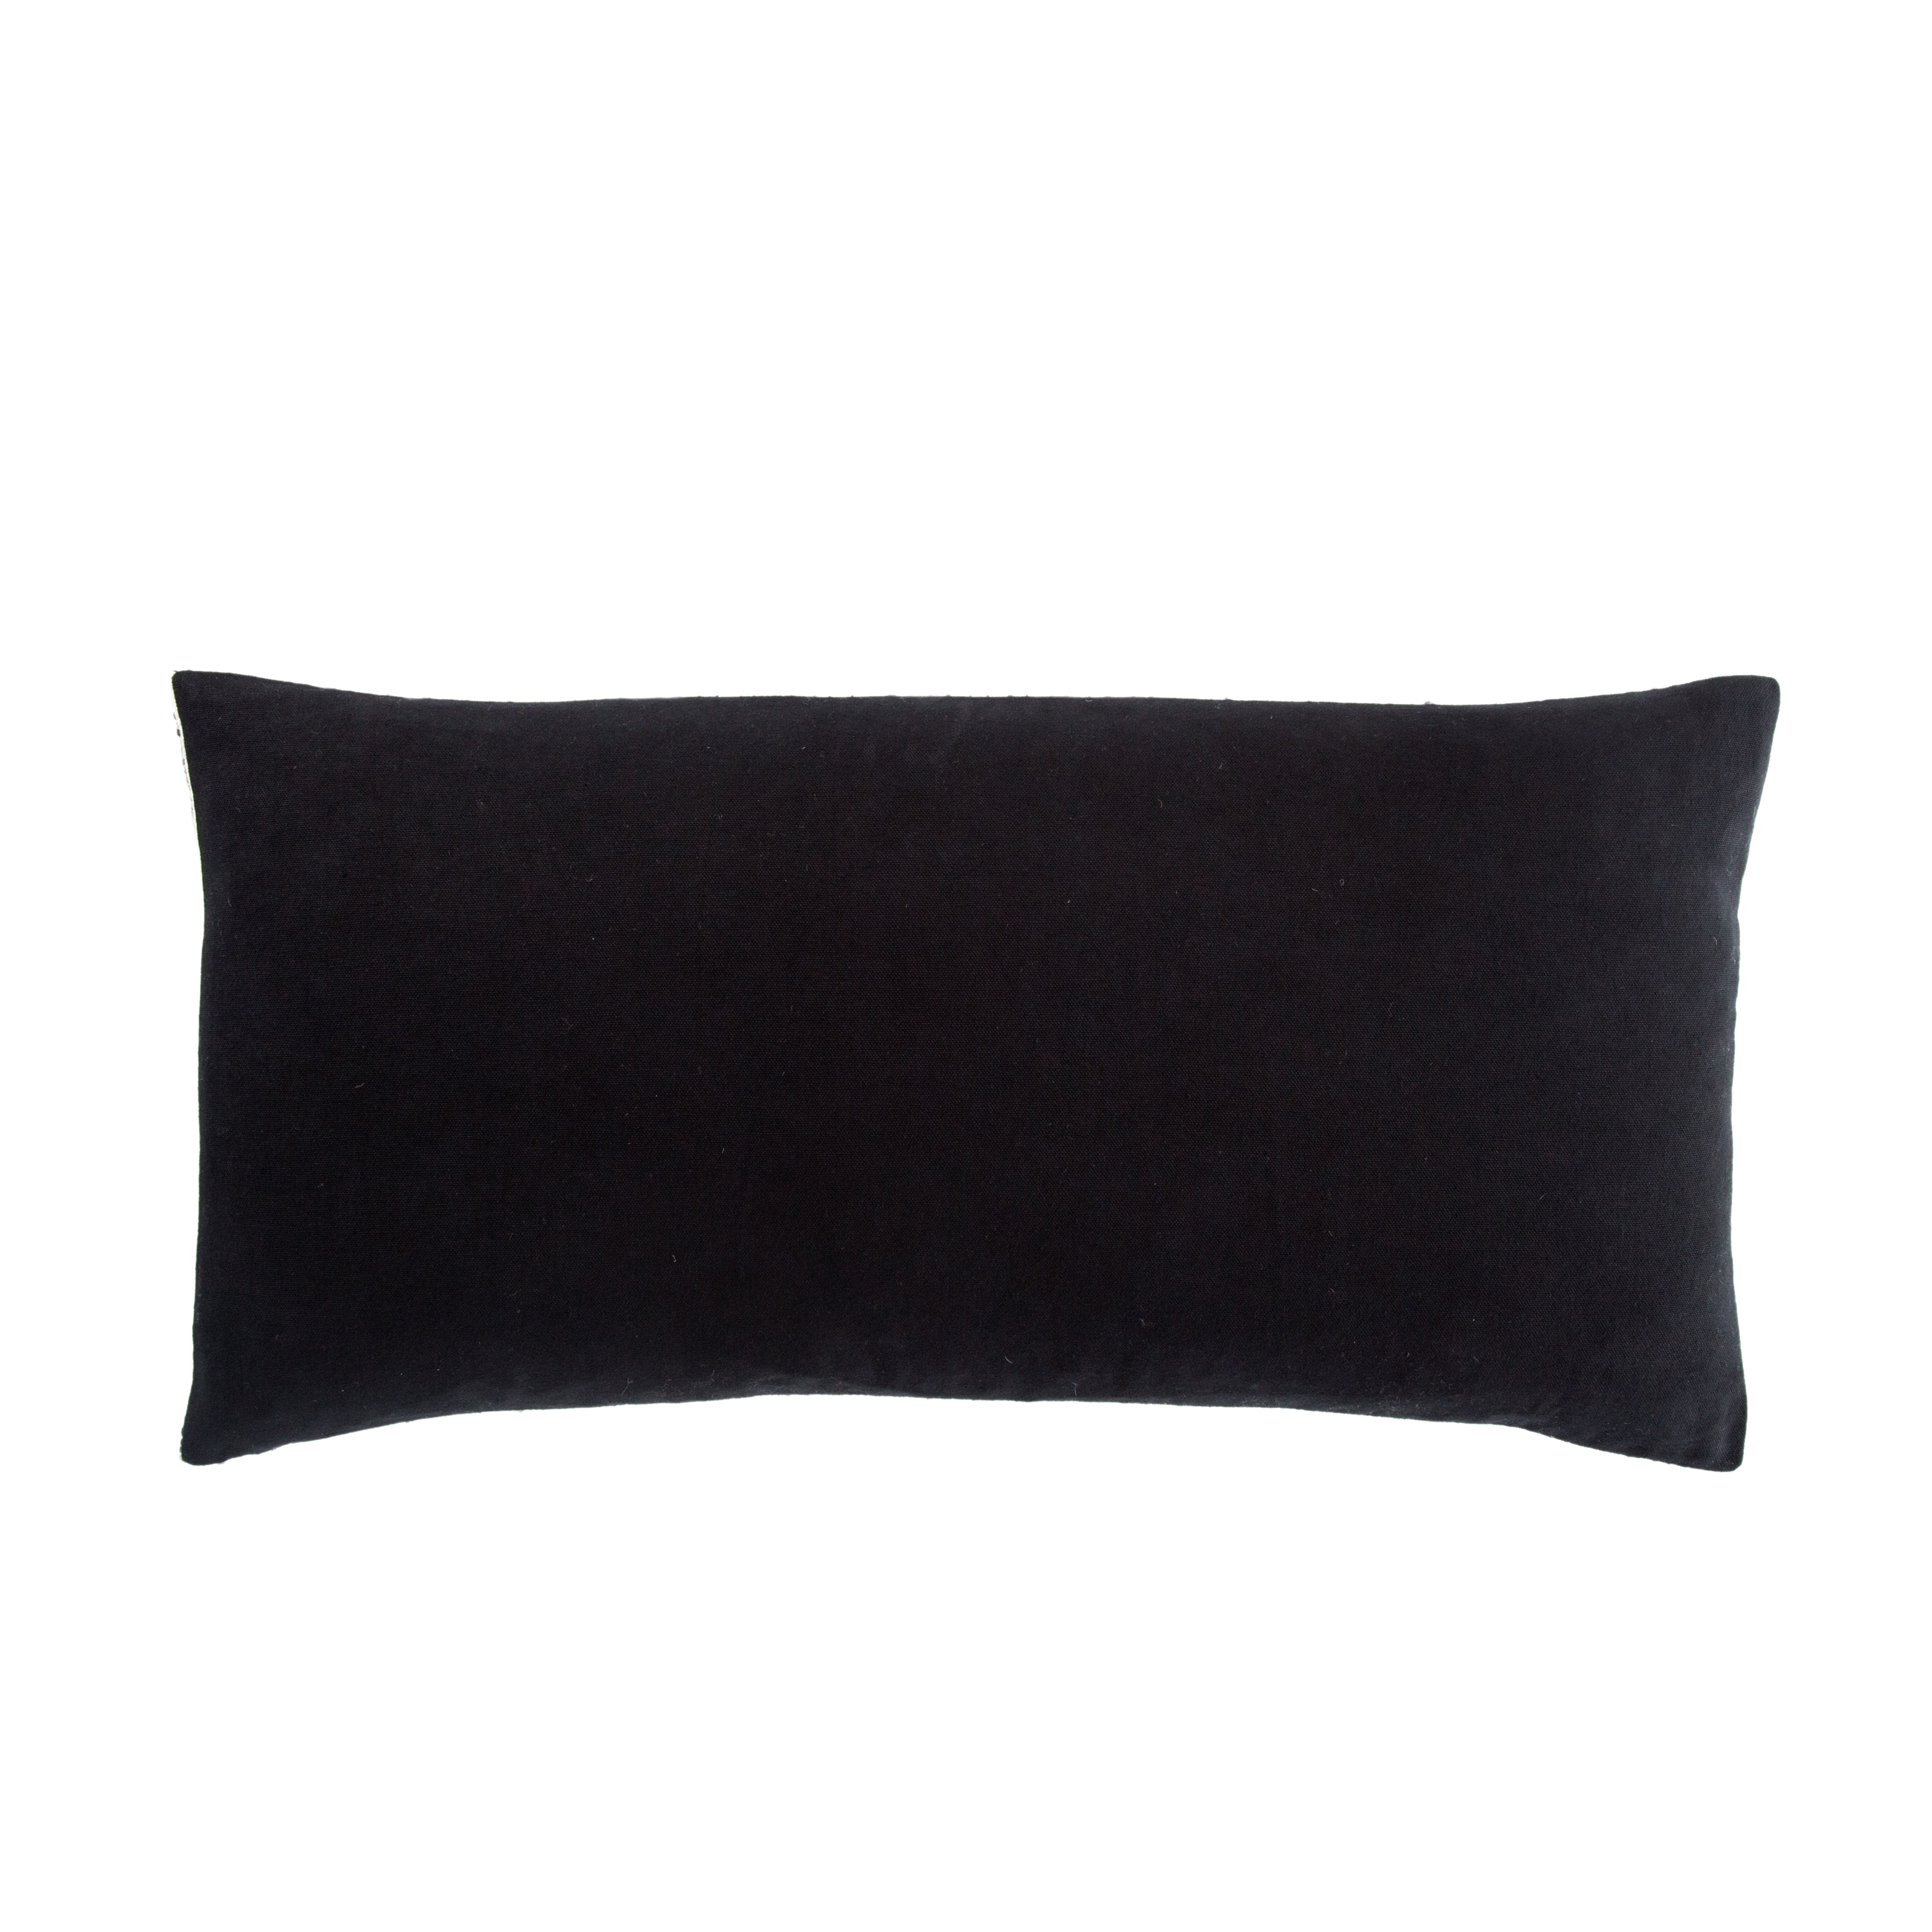 Elian Lumbar Pillow, 24" x 12" - Image 1